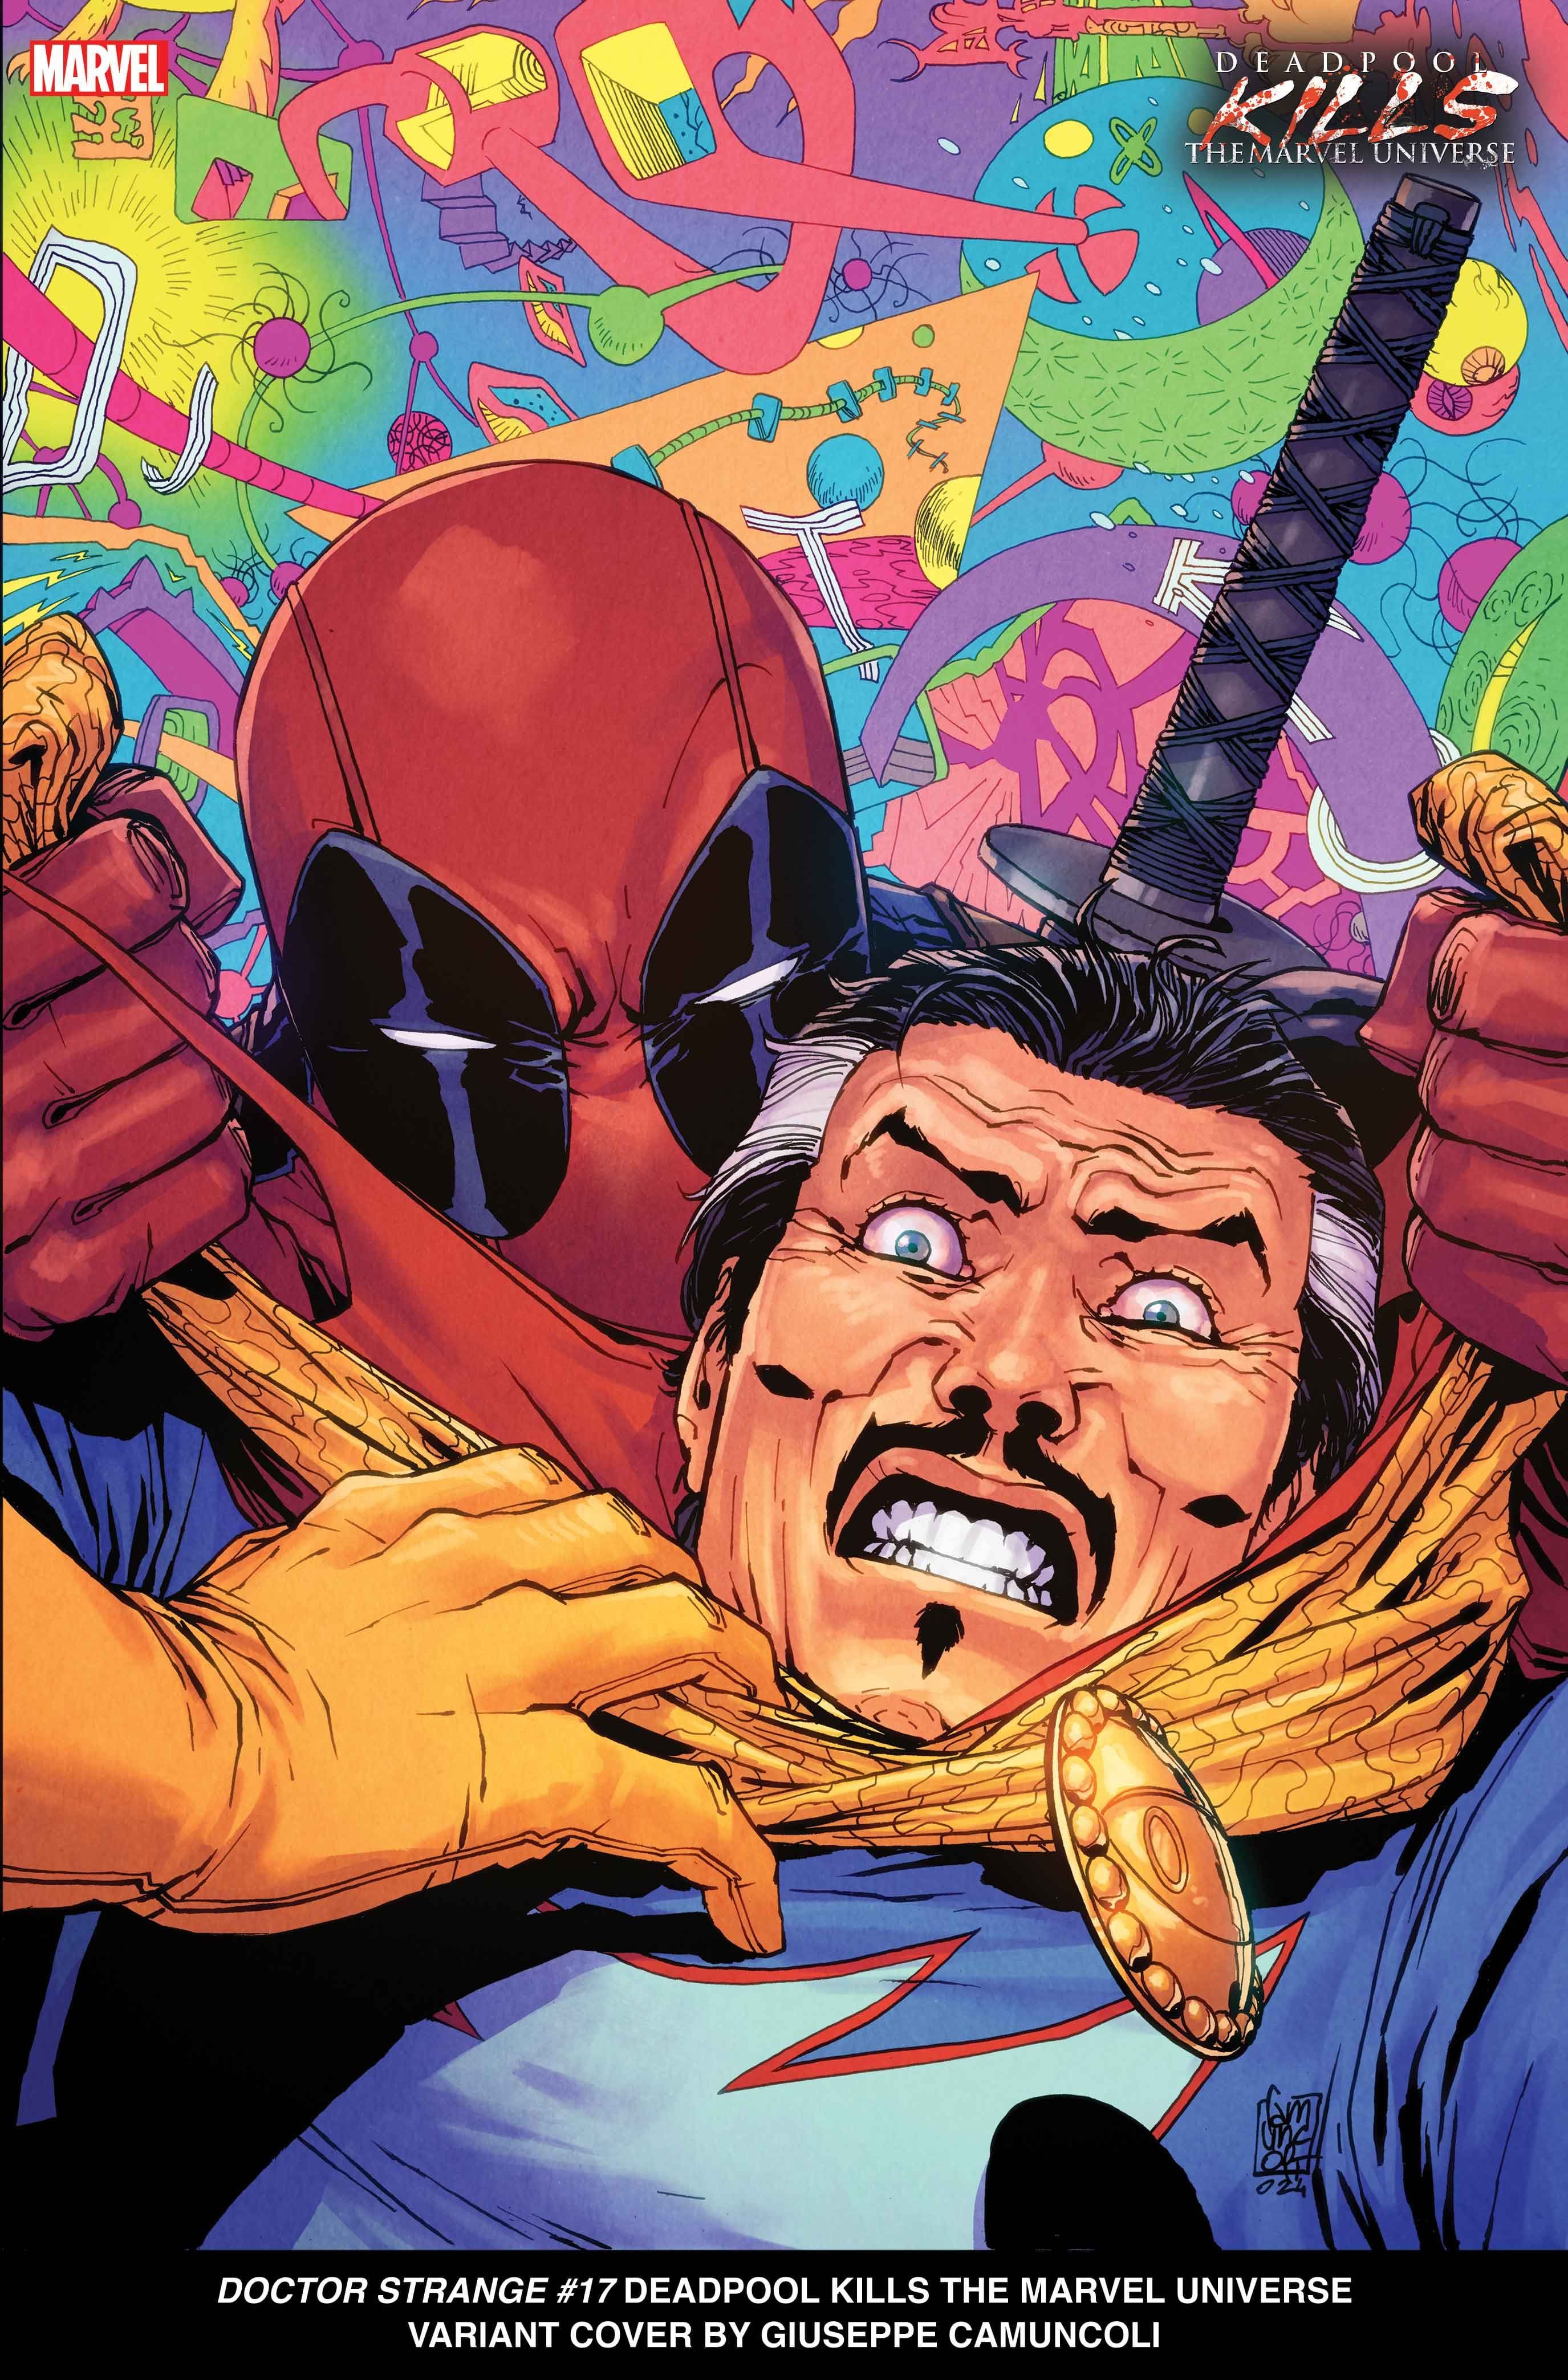 DOCTOR STRANGE #17 Deadpool Kills the Marvel Universe Variant Cover by Giuseppe Camuncoli